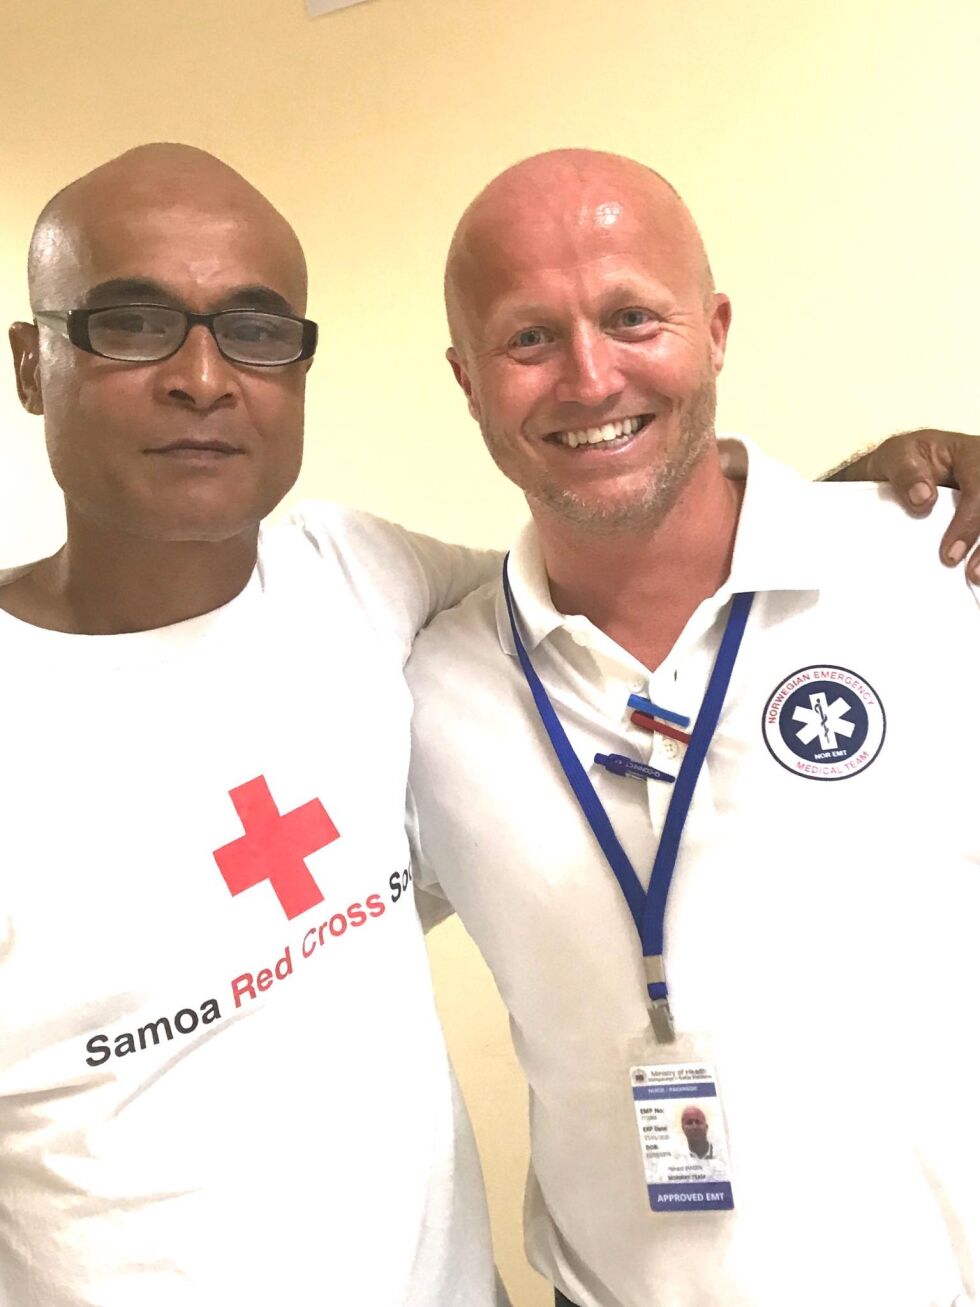 HJELPER LOKALBEFOLKNINGEN. Håvard Jansen jobber som sykepleier og paramedic i forbindelse med meslingeepidemien i Samoa. Her med en som jobber for Røde Kors.
 Foto: Privat